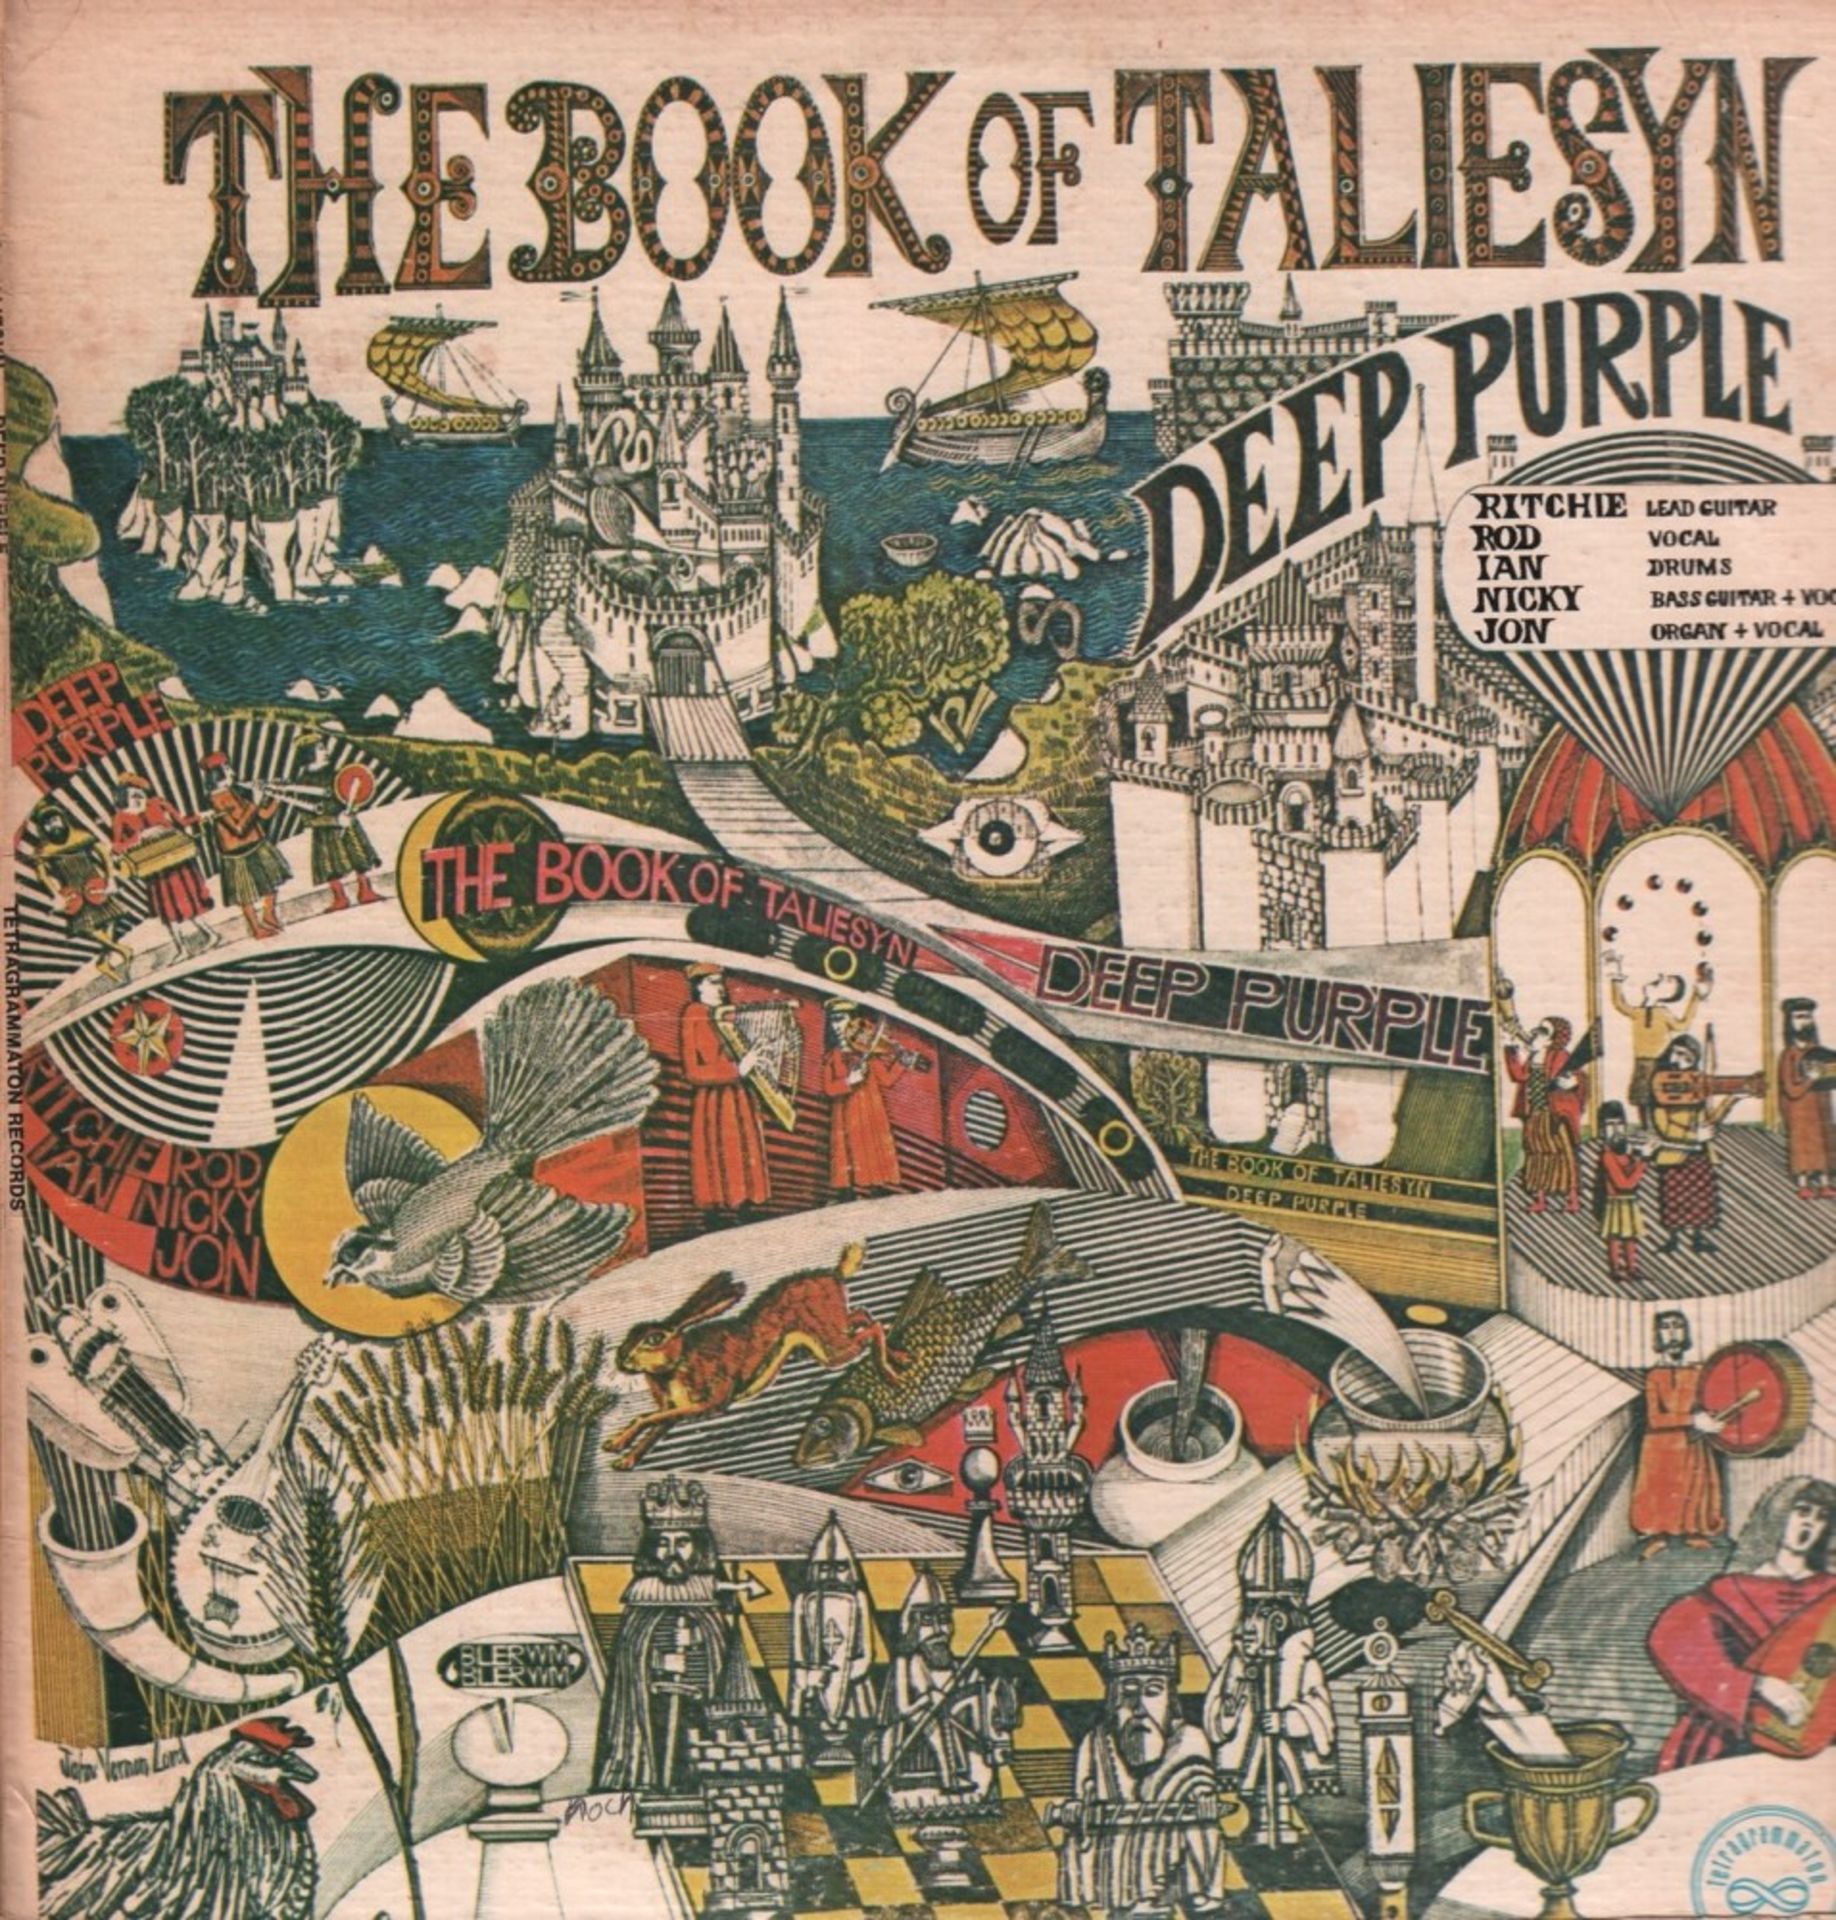 Schallplatte. Deep Purple The Book of Taliesyn. Langspielplatte. T 107. USA, Tetragrammaton Records,